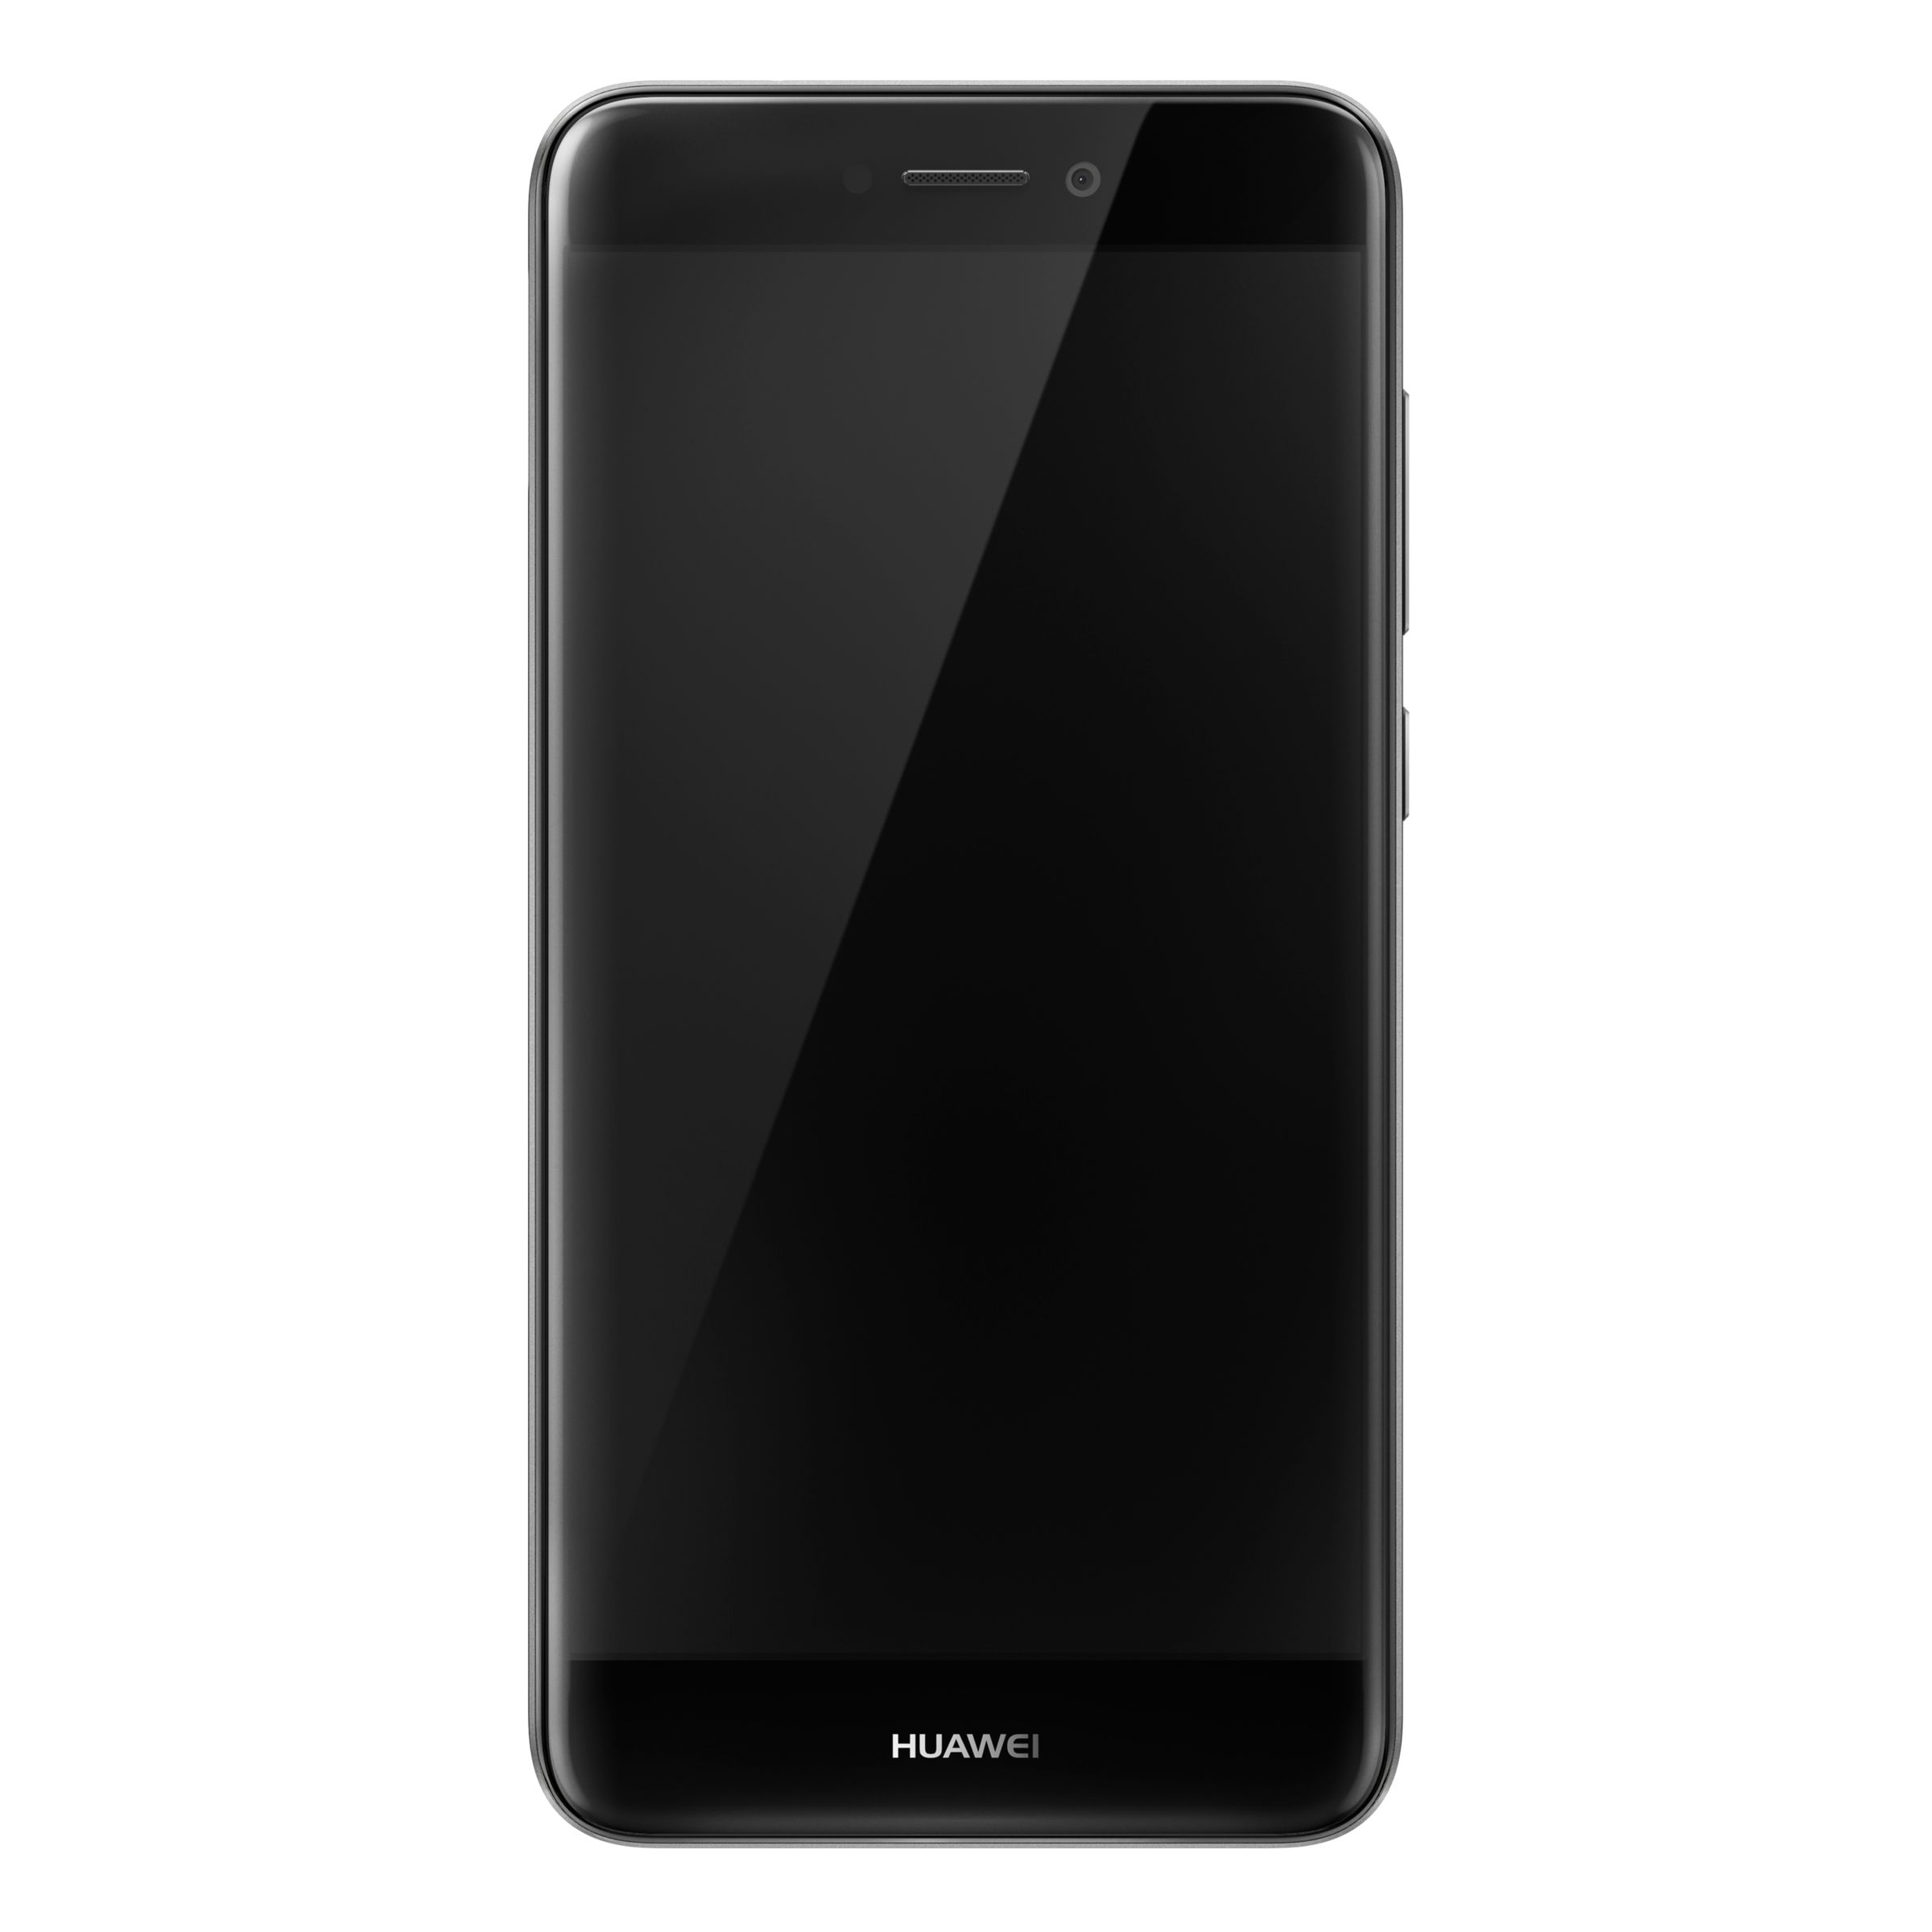 Huawei P8 Lite, Android, 5.2”, 4G LTE, SIM Free, 16GB, Black